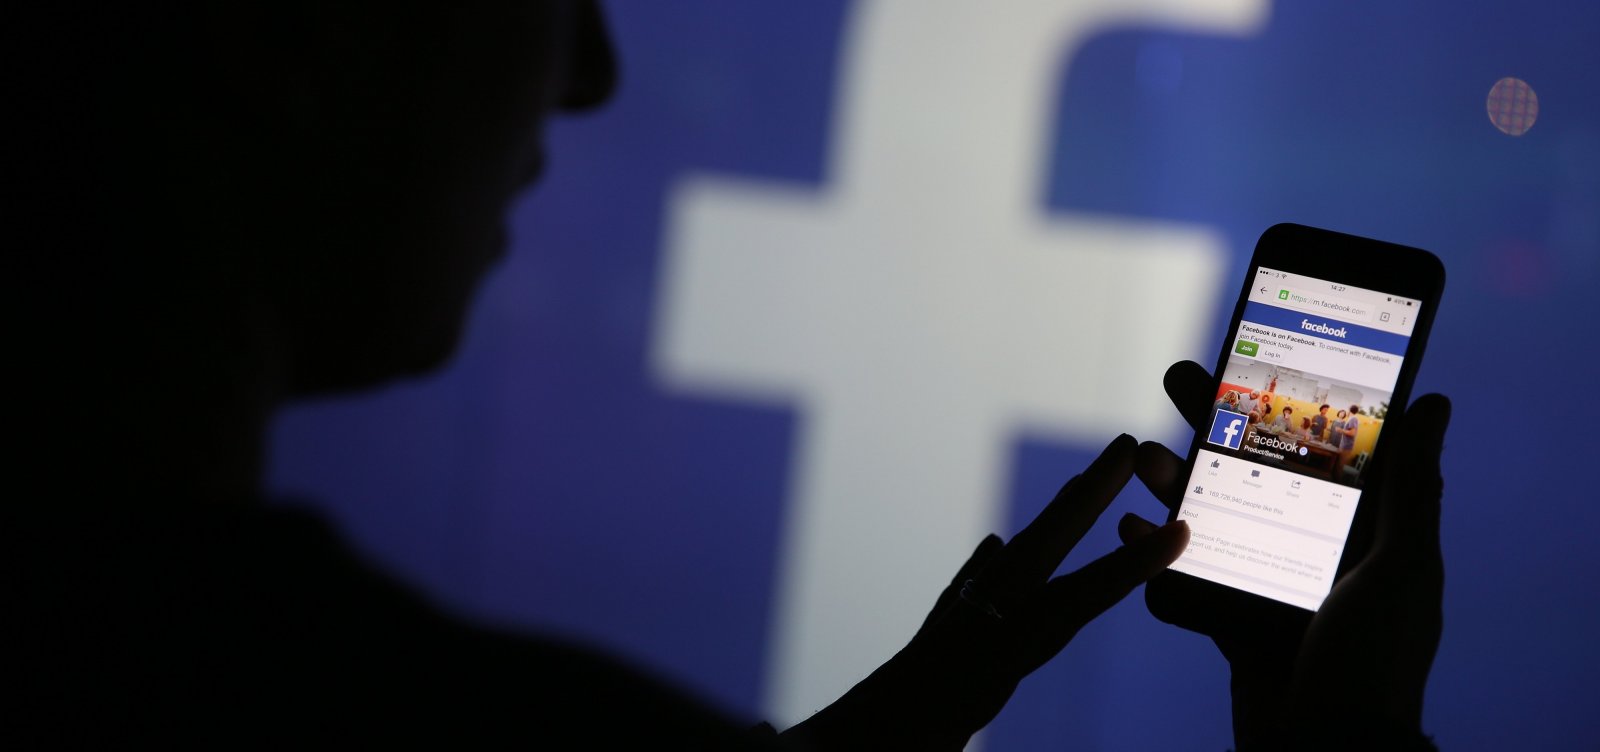 Após ordem judicial, Facebook fornece dados de investigados no caso Marielle